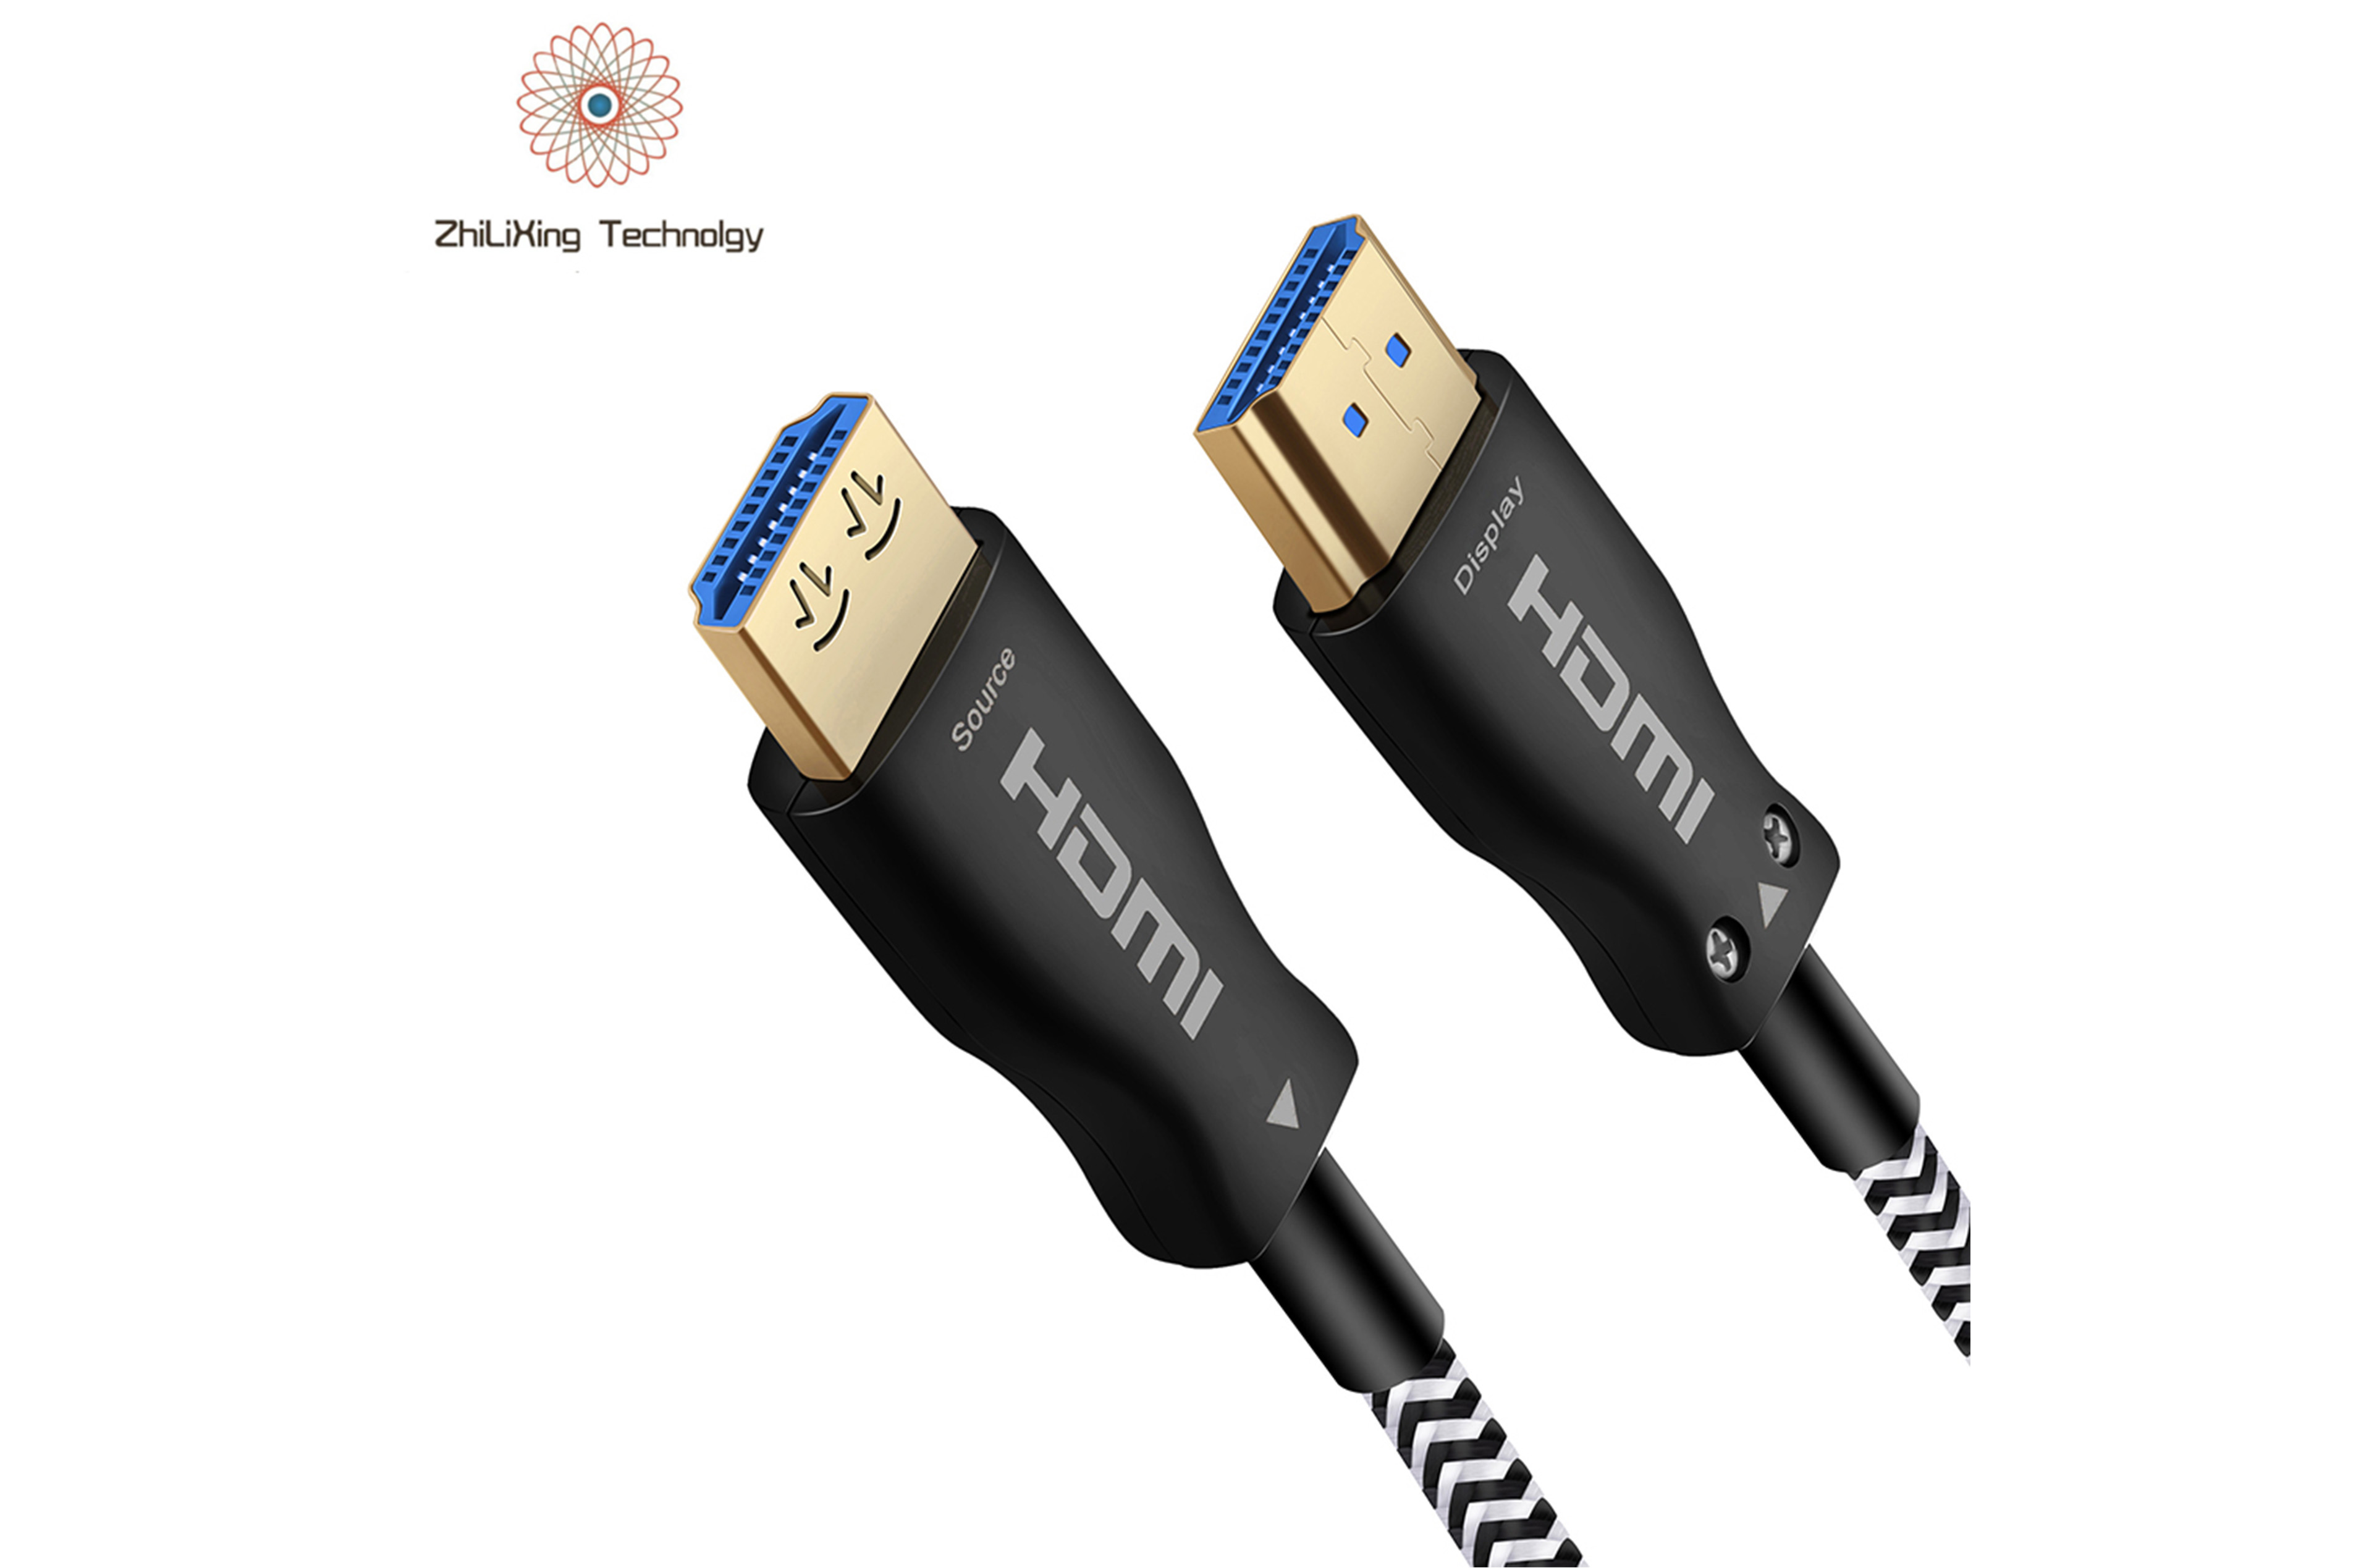 HDMI fiber optic cable-19006